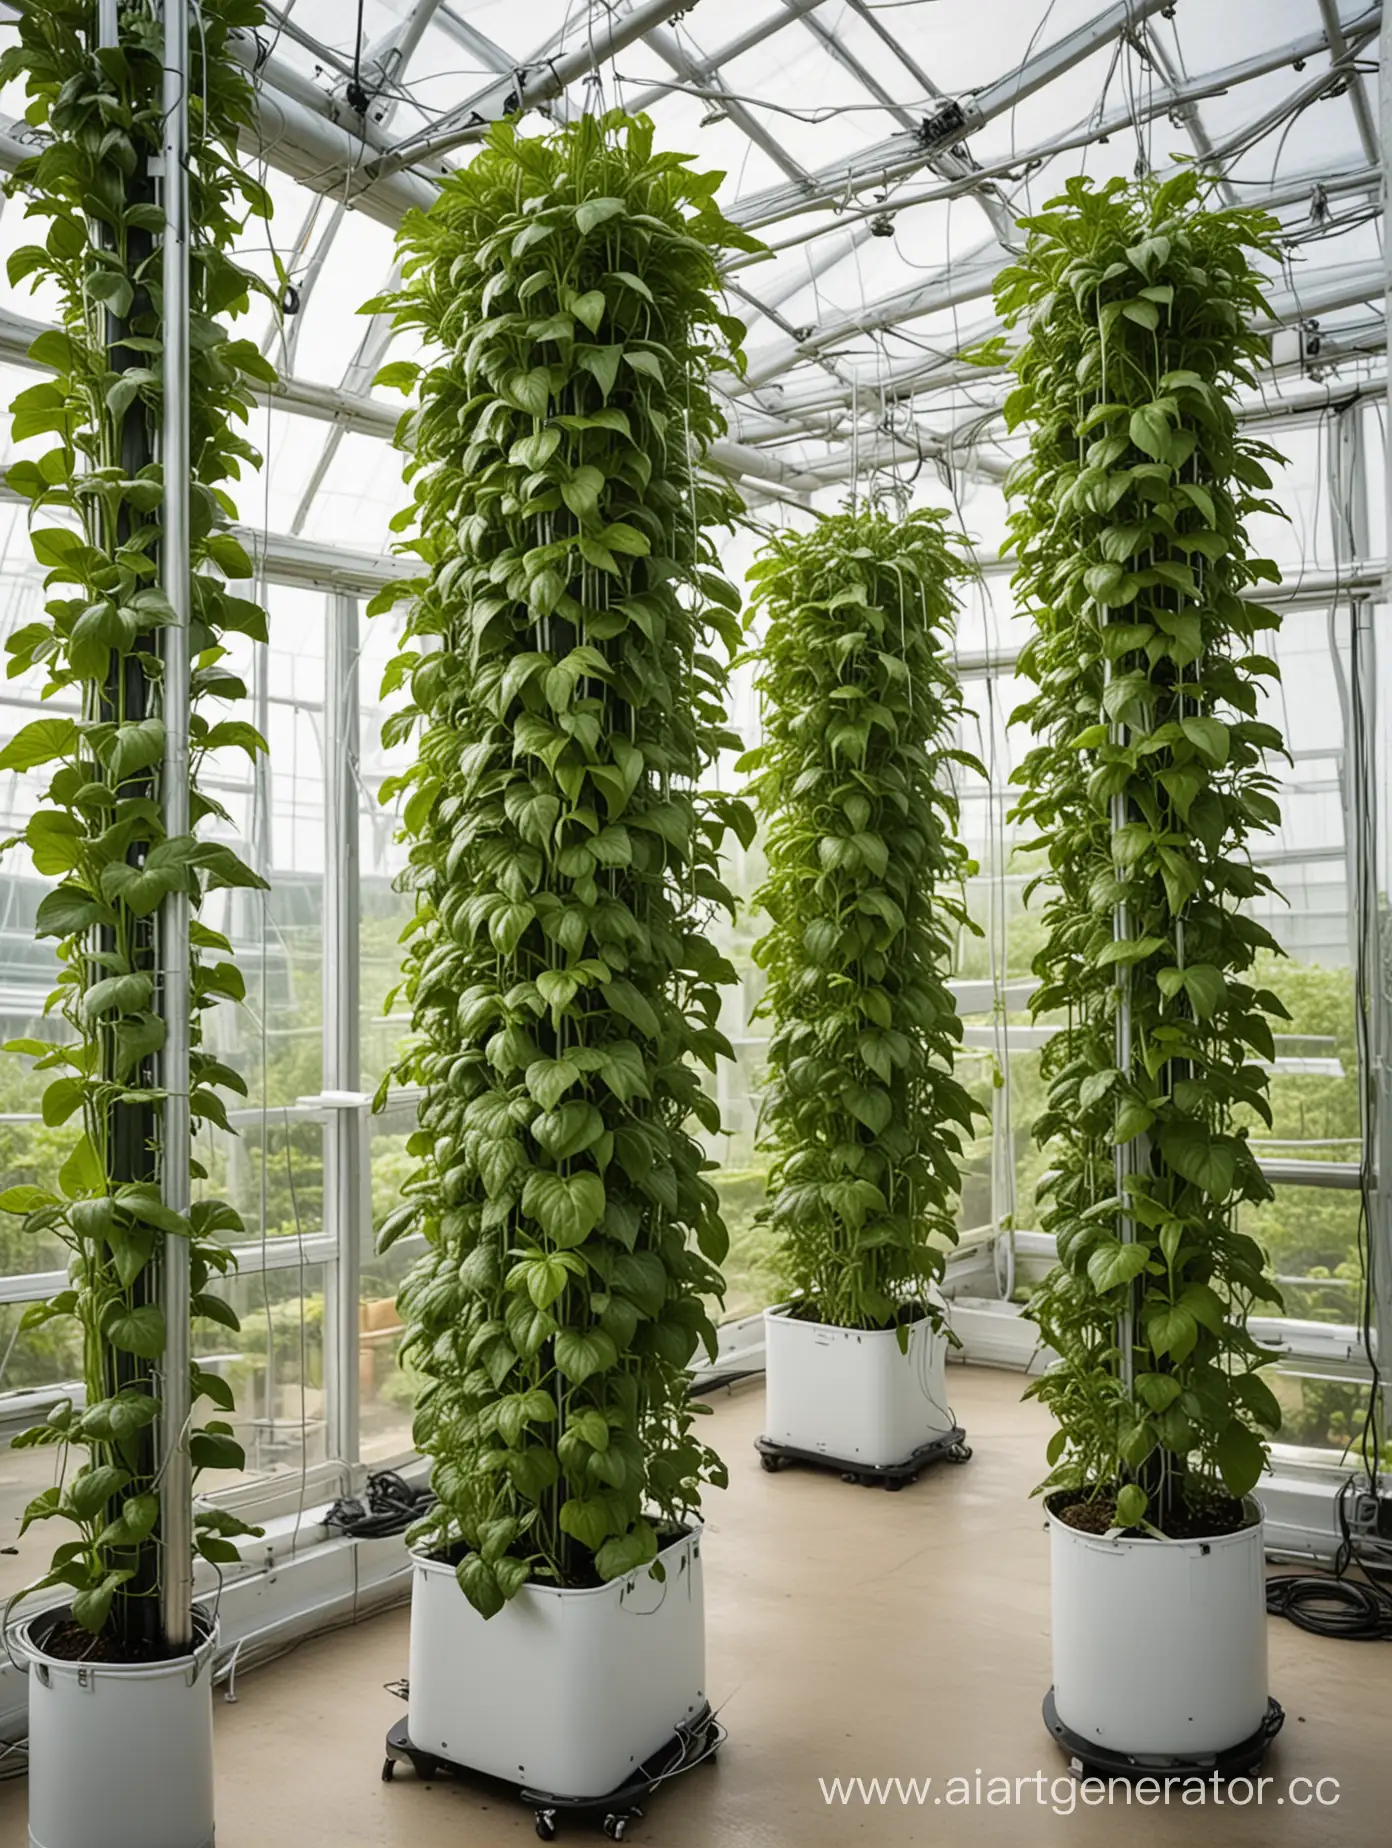 аэропонная вертикальная система выращивания зеленых растений в светлой оранжерее много света